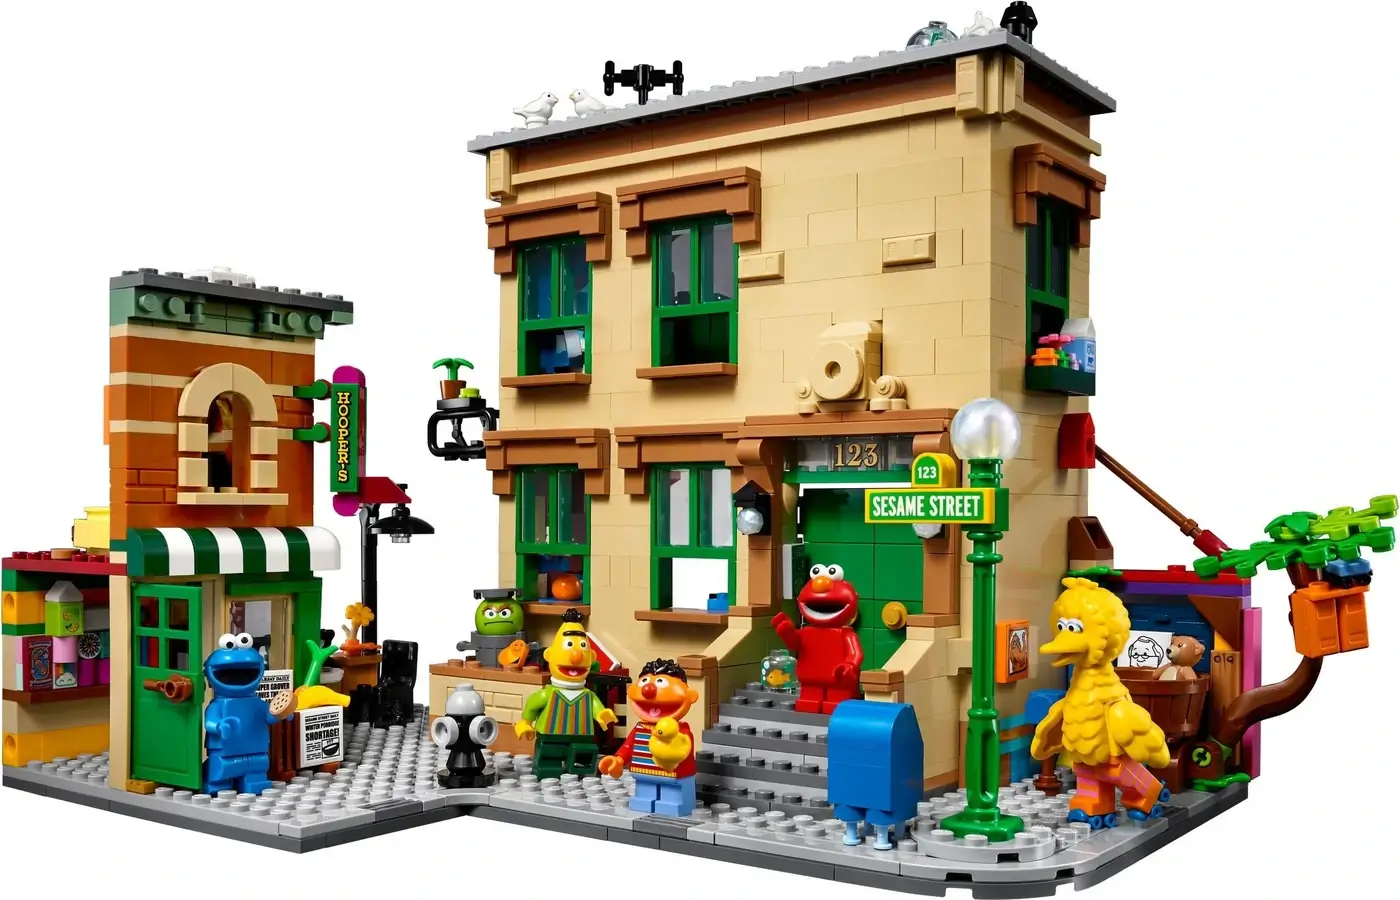 Róg ulicy sezamkowej z serii LEGO® Ideas